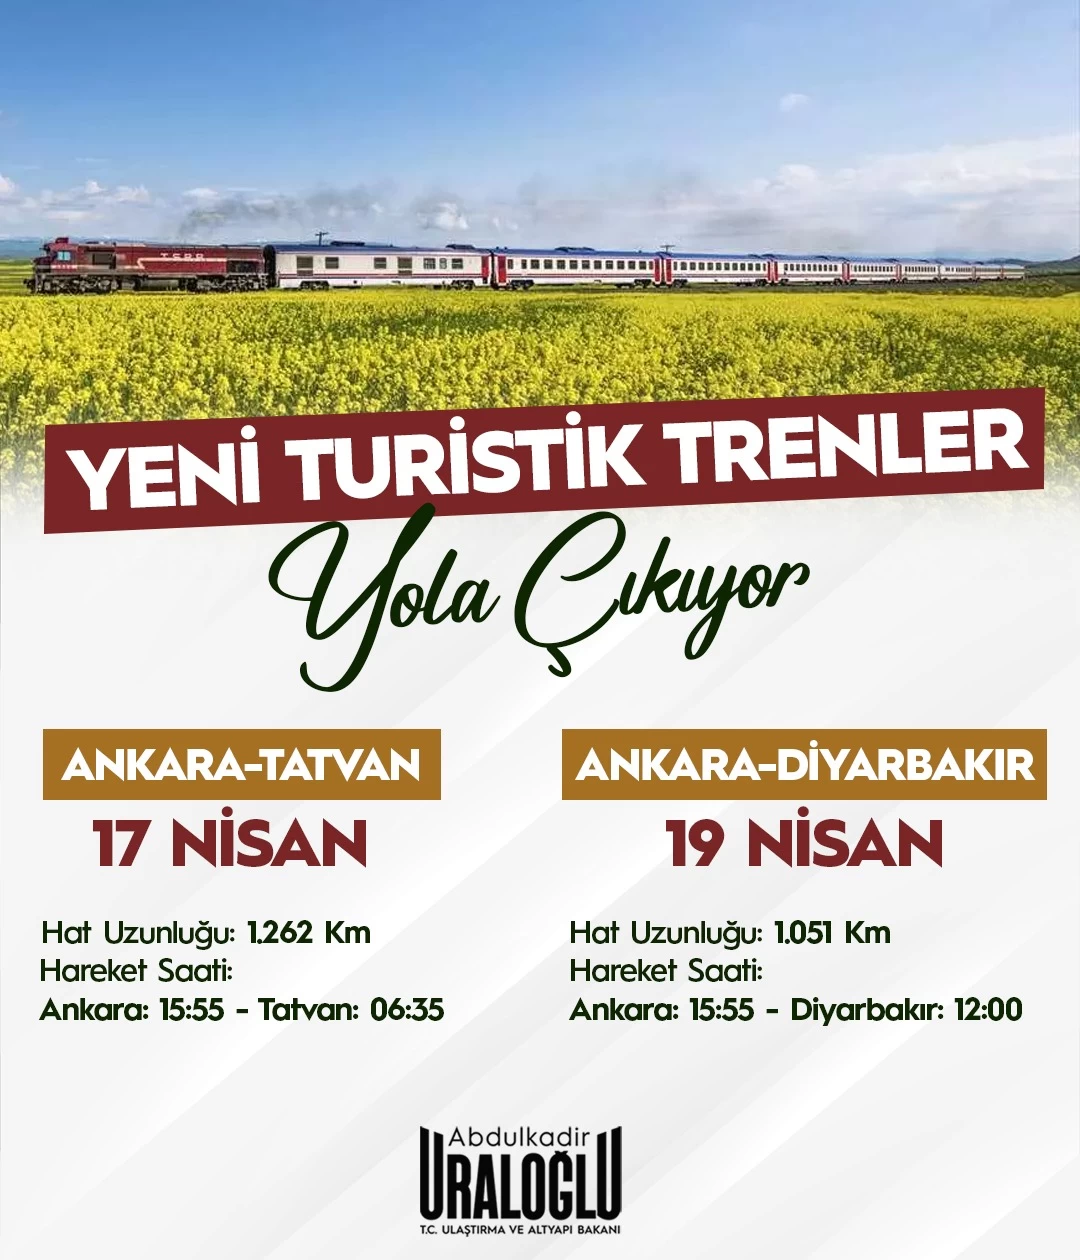 Bakan Uraloğlu paylaştı! Ankara'dan başlayacak yeni tren seferleri için geri sayım başladı